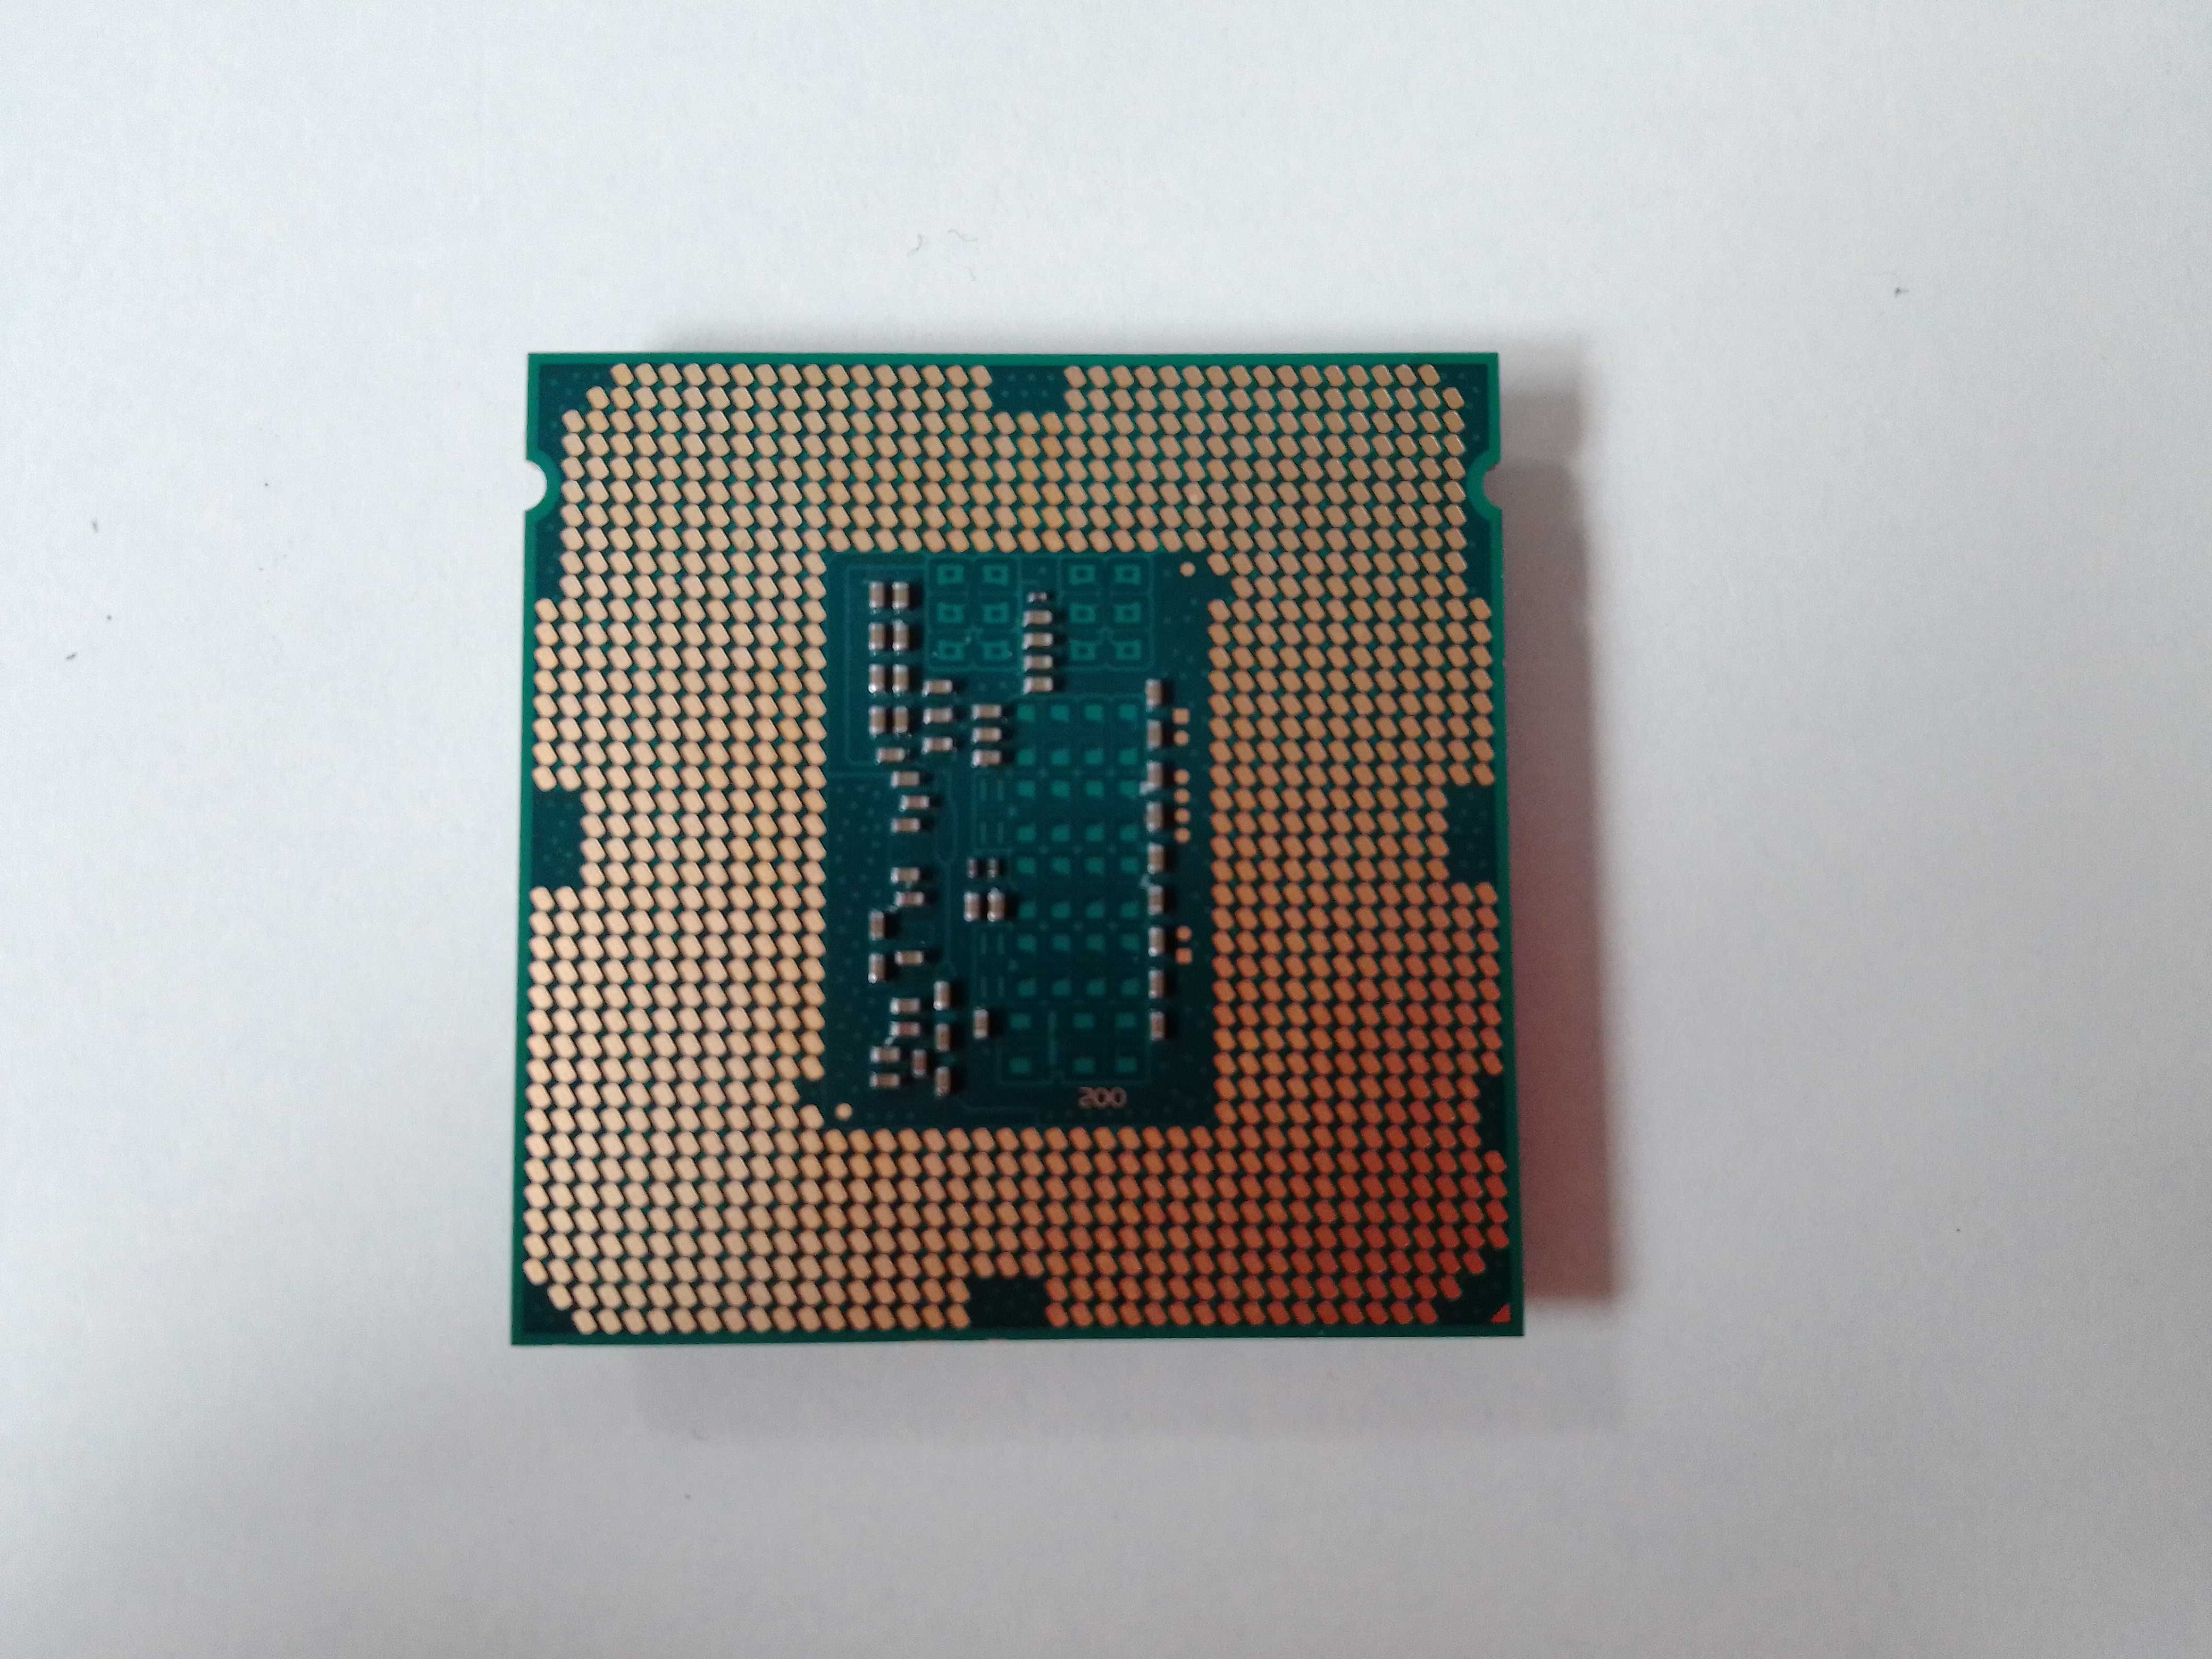 Procesor Intel Core i5-4460 4r 4w ; 3,20GHz -> 3,40GHz (002723)